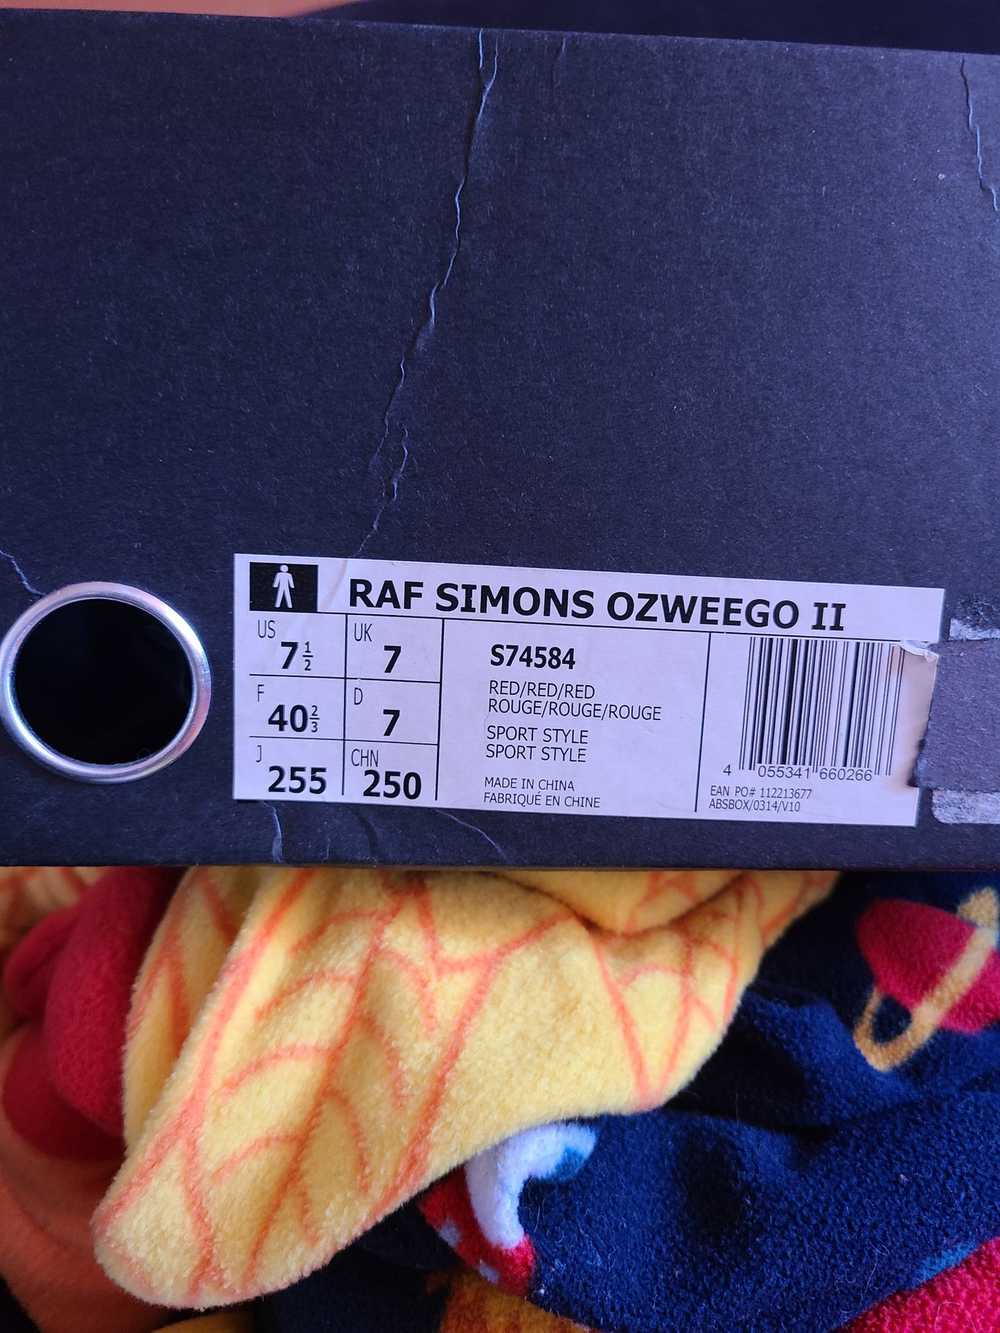 Adidas × Raf Simons raf simons ozweego 2 red - image 6